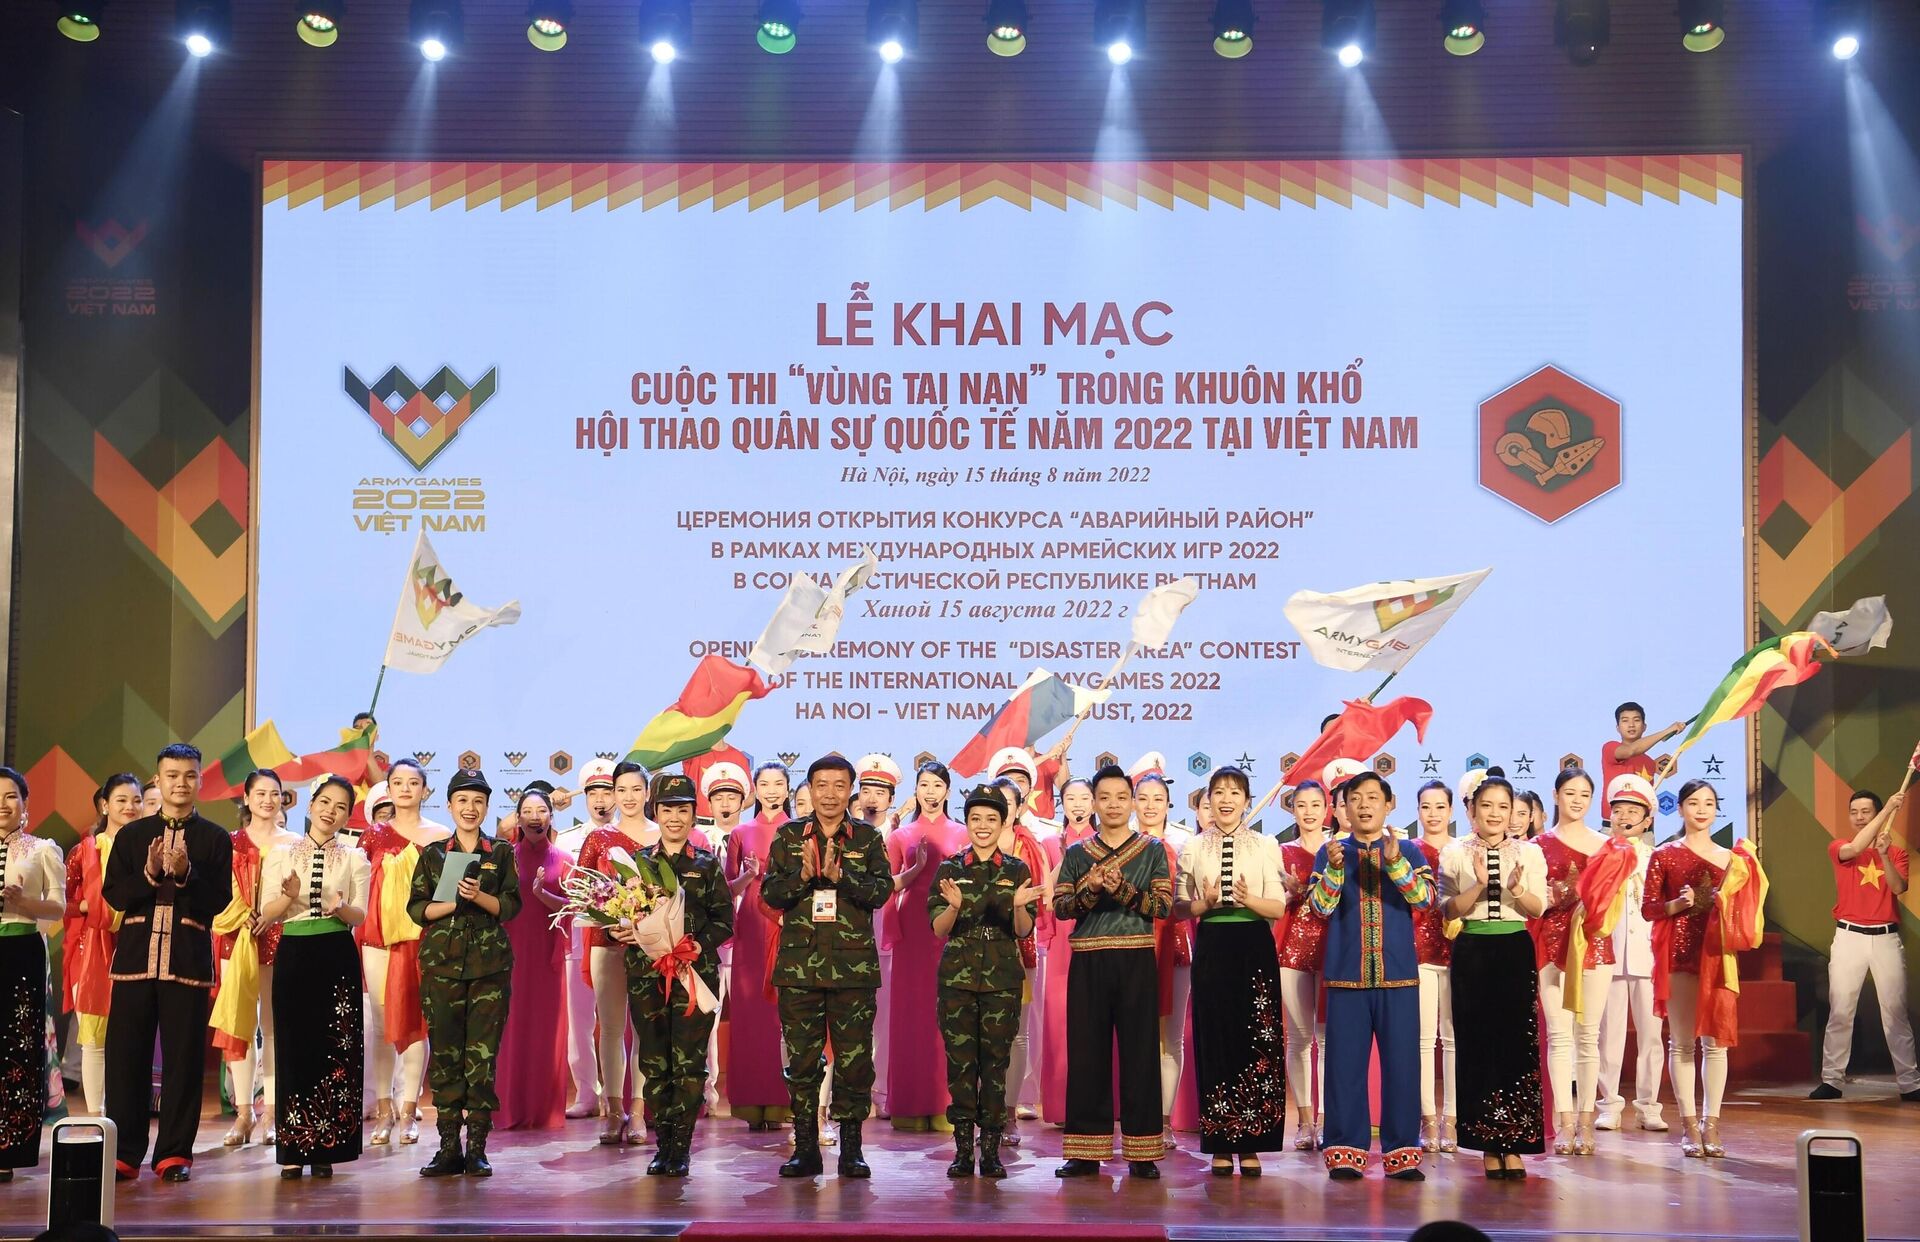 Army Games 2022: Khai mạc Cuộc thi “Vùng tai nạn” tại Việt Nam - Sputnik Việt Nam, 1920, 15.08.2022